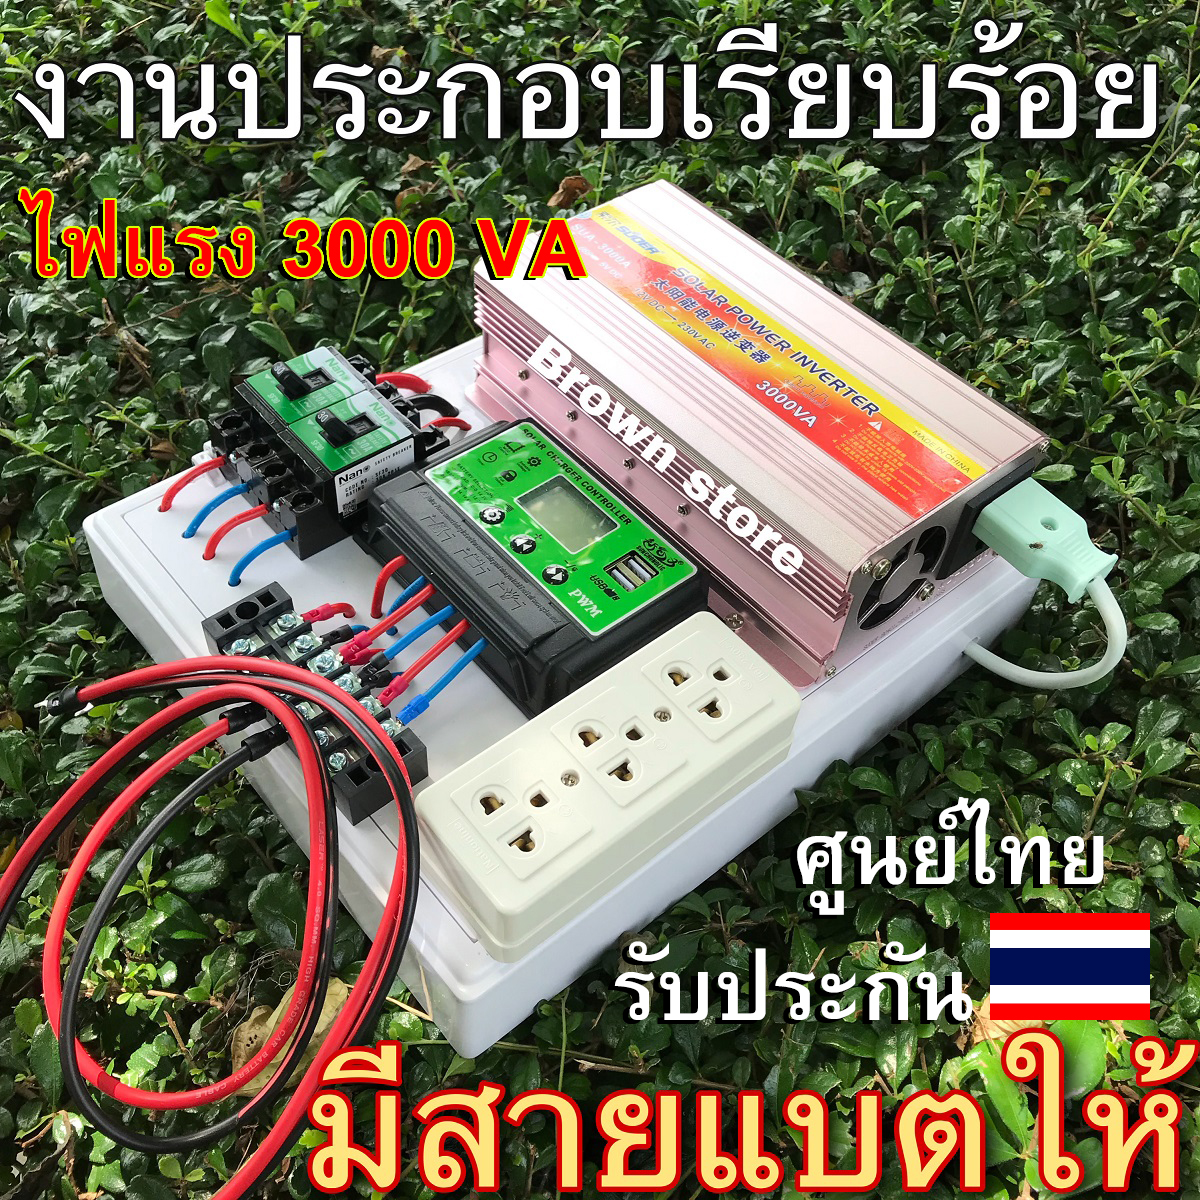 [รับประกันศูนย์ไทย] ชุดคอนโทรล ชุดนอนนา ไฟแรง 3000 VA คุมจ่ายไฟW [เฉพาะระบบคอนโทรล] โซล่าเซลล์ แปลงไฟแบตรถยนต์ 12V เป็นไฟบ้าน220V  BROWN